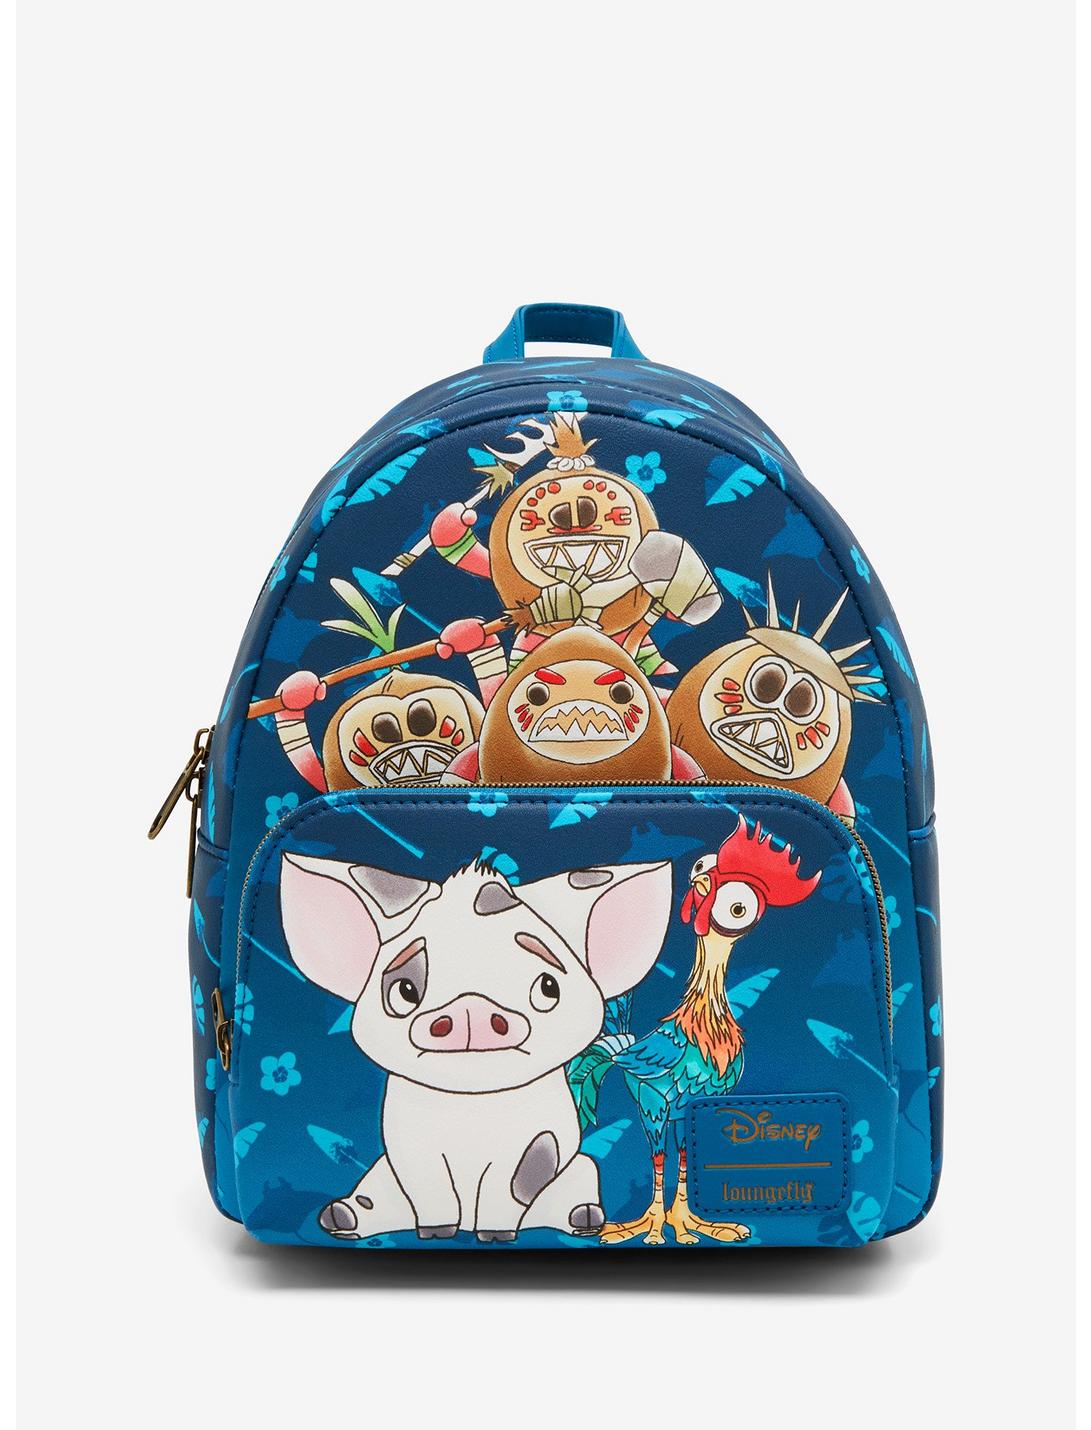 Loungefly Disney Moana Pua Heihei Mini Backpack, , hi-res